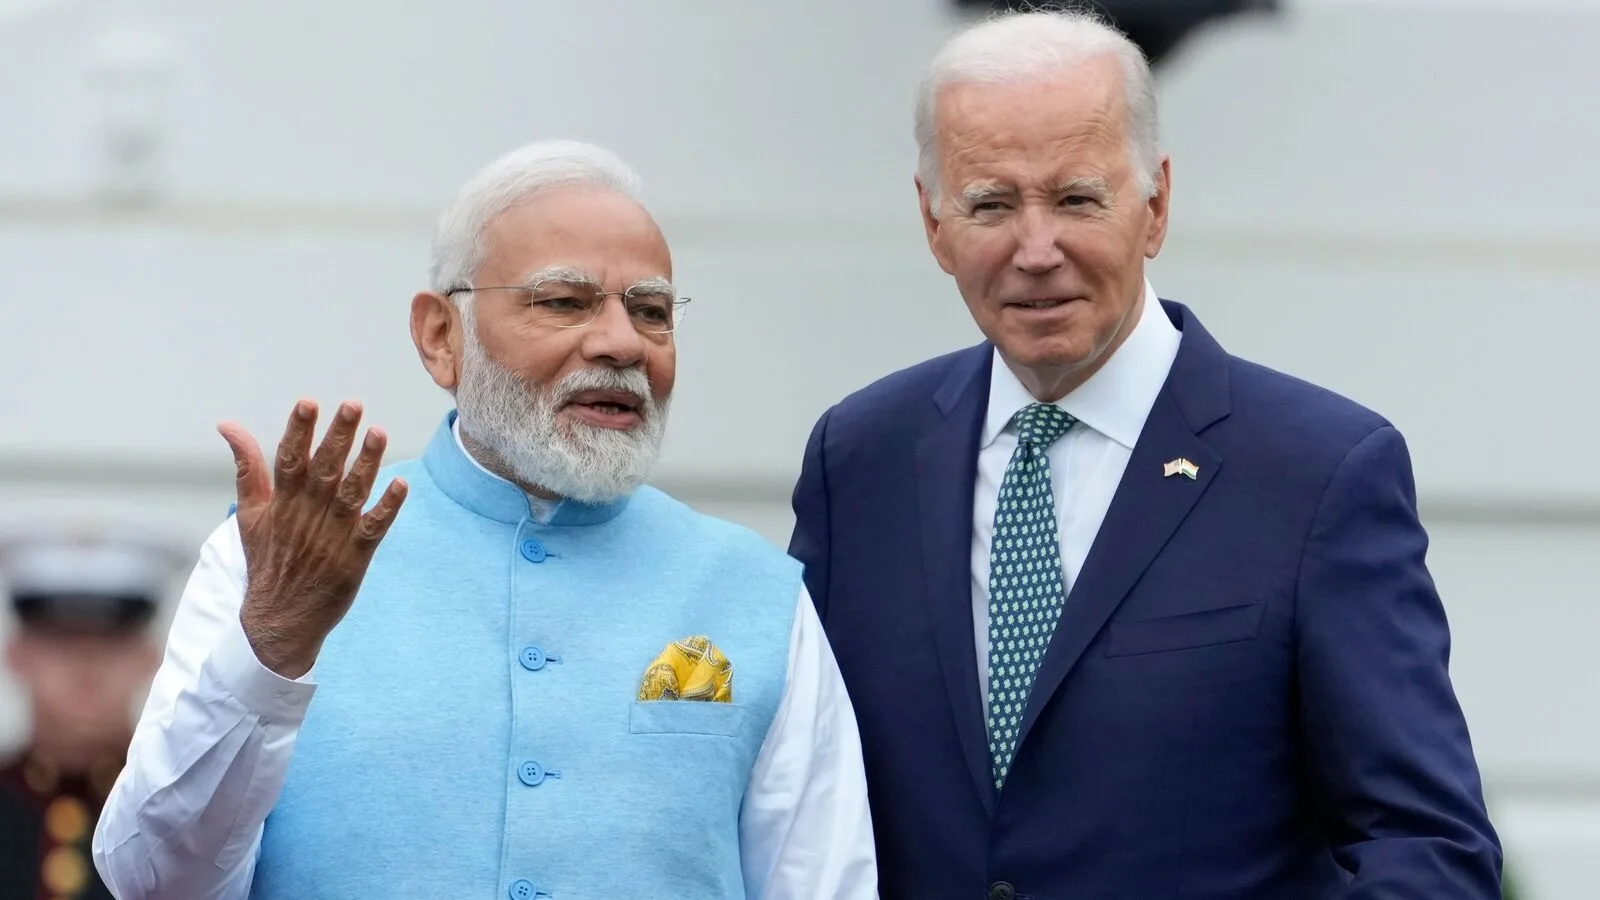 President Joe Biden arrived in India for G20 Meeting